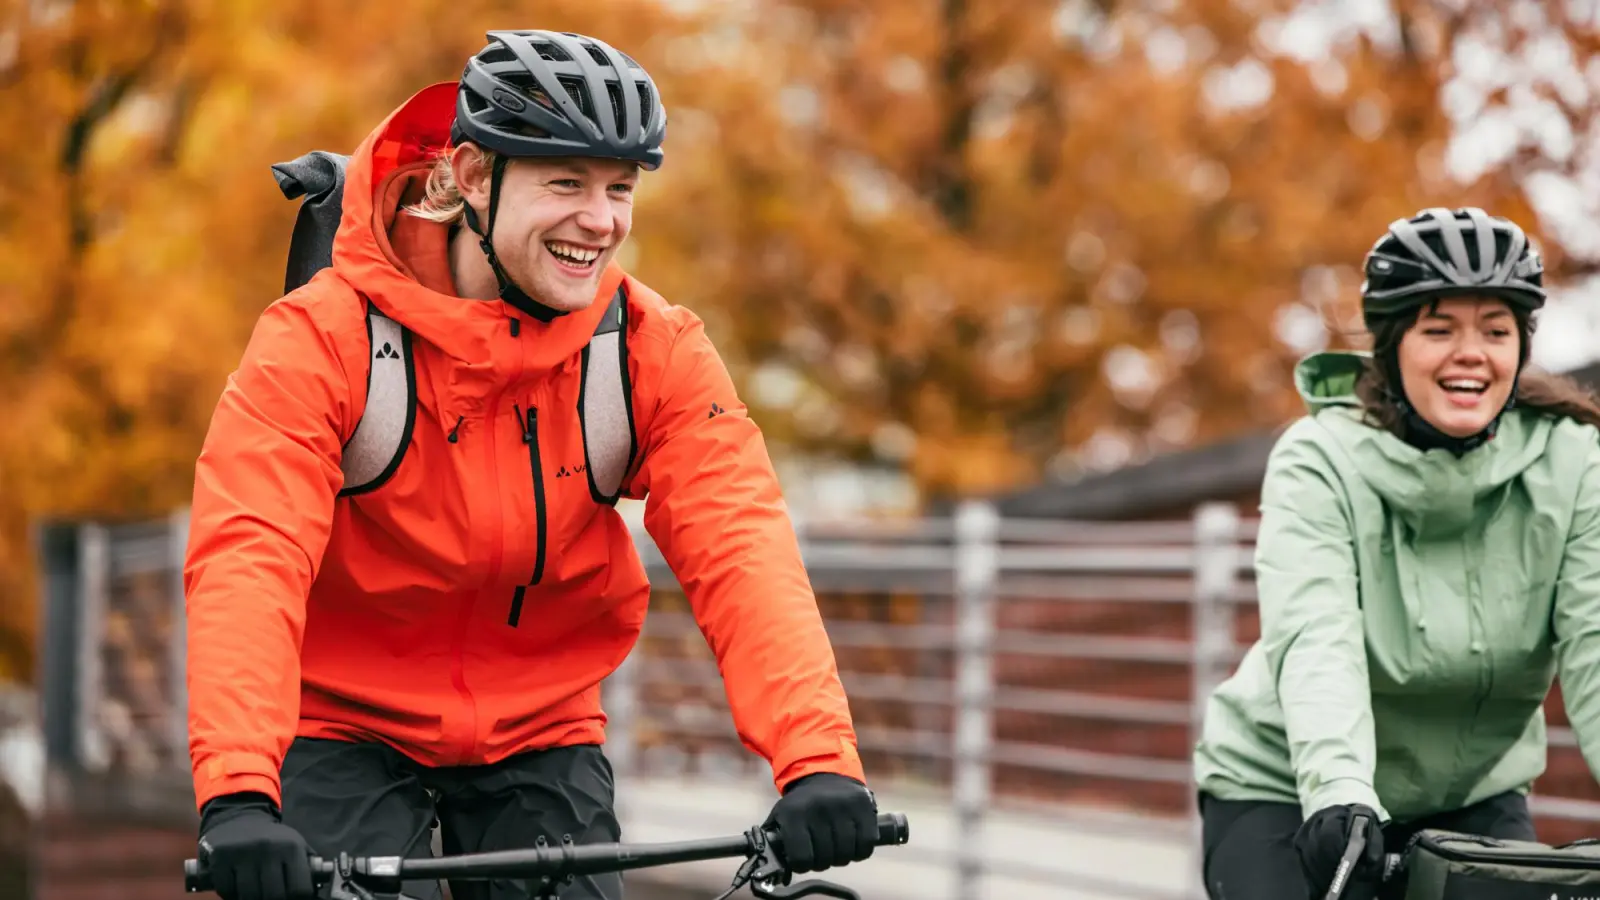 Fahrradfahren macht auch im Herbst Spaß - dann halt in winddichter und wasserabweisender Kleidung. (Foto: Martin Erd, Vaude)